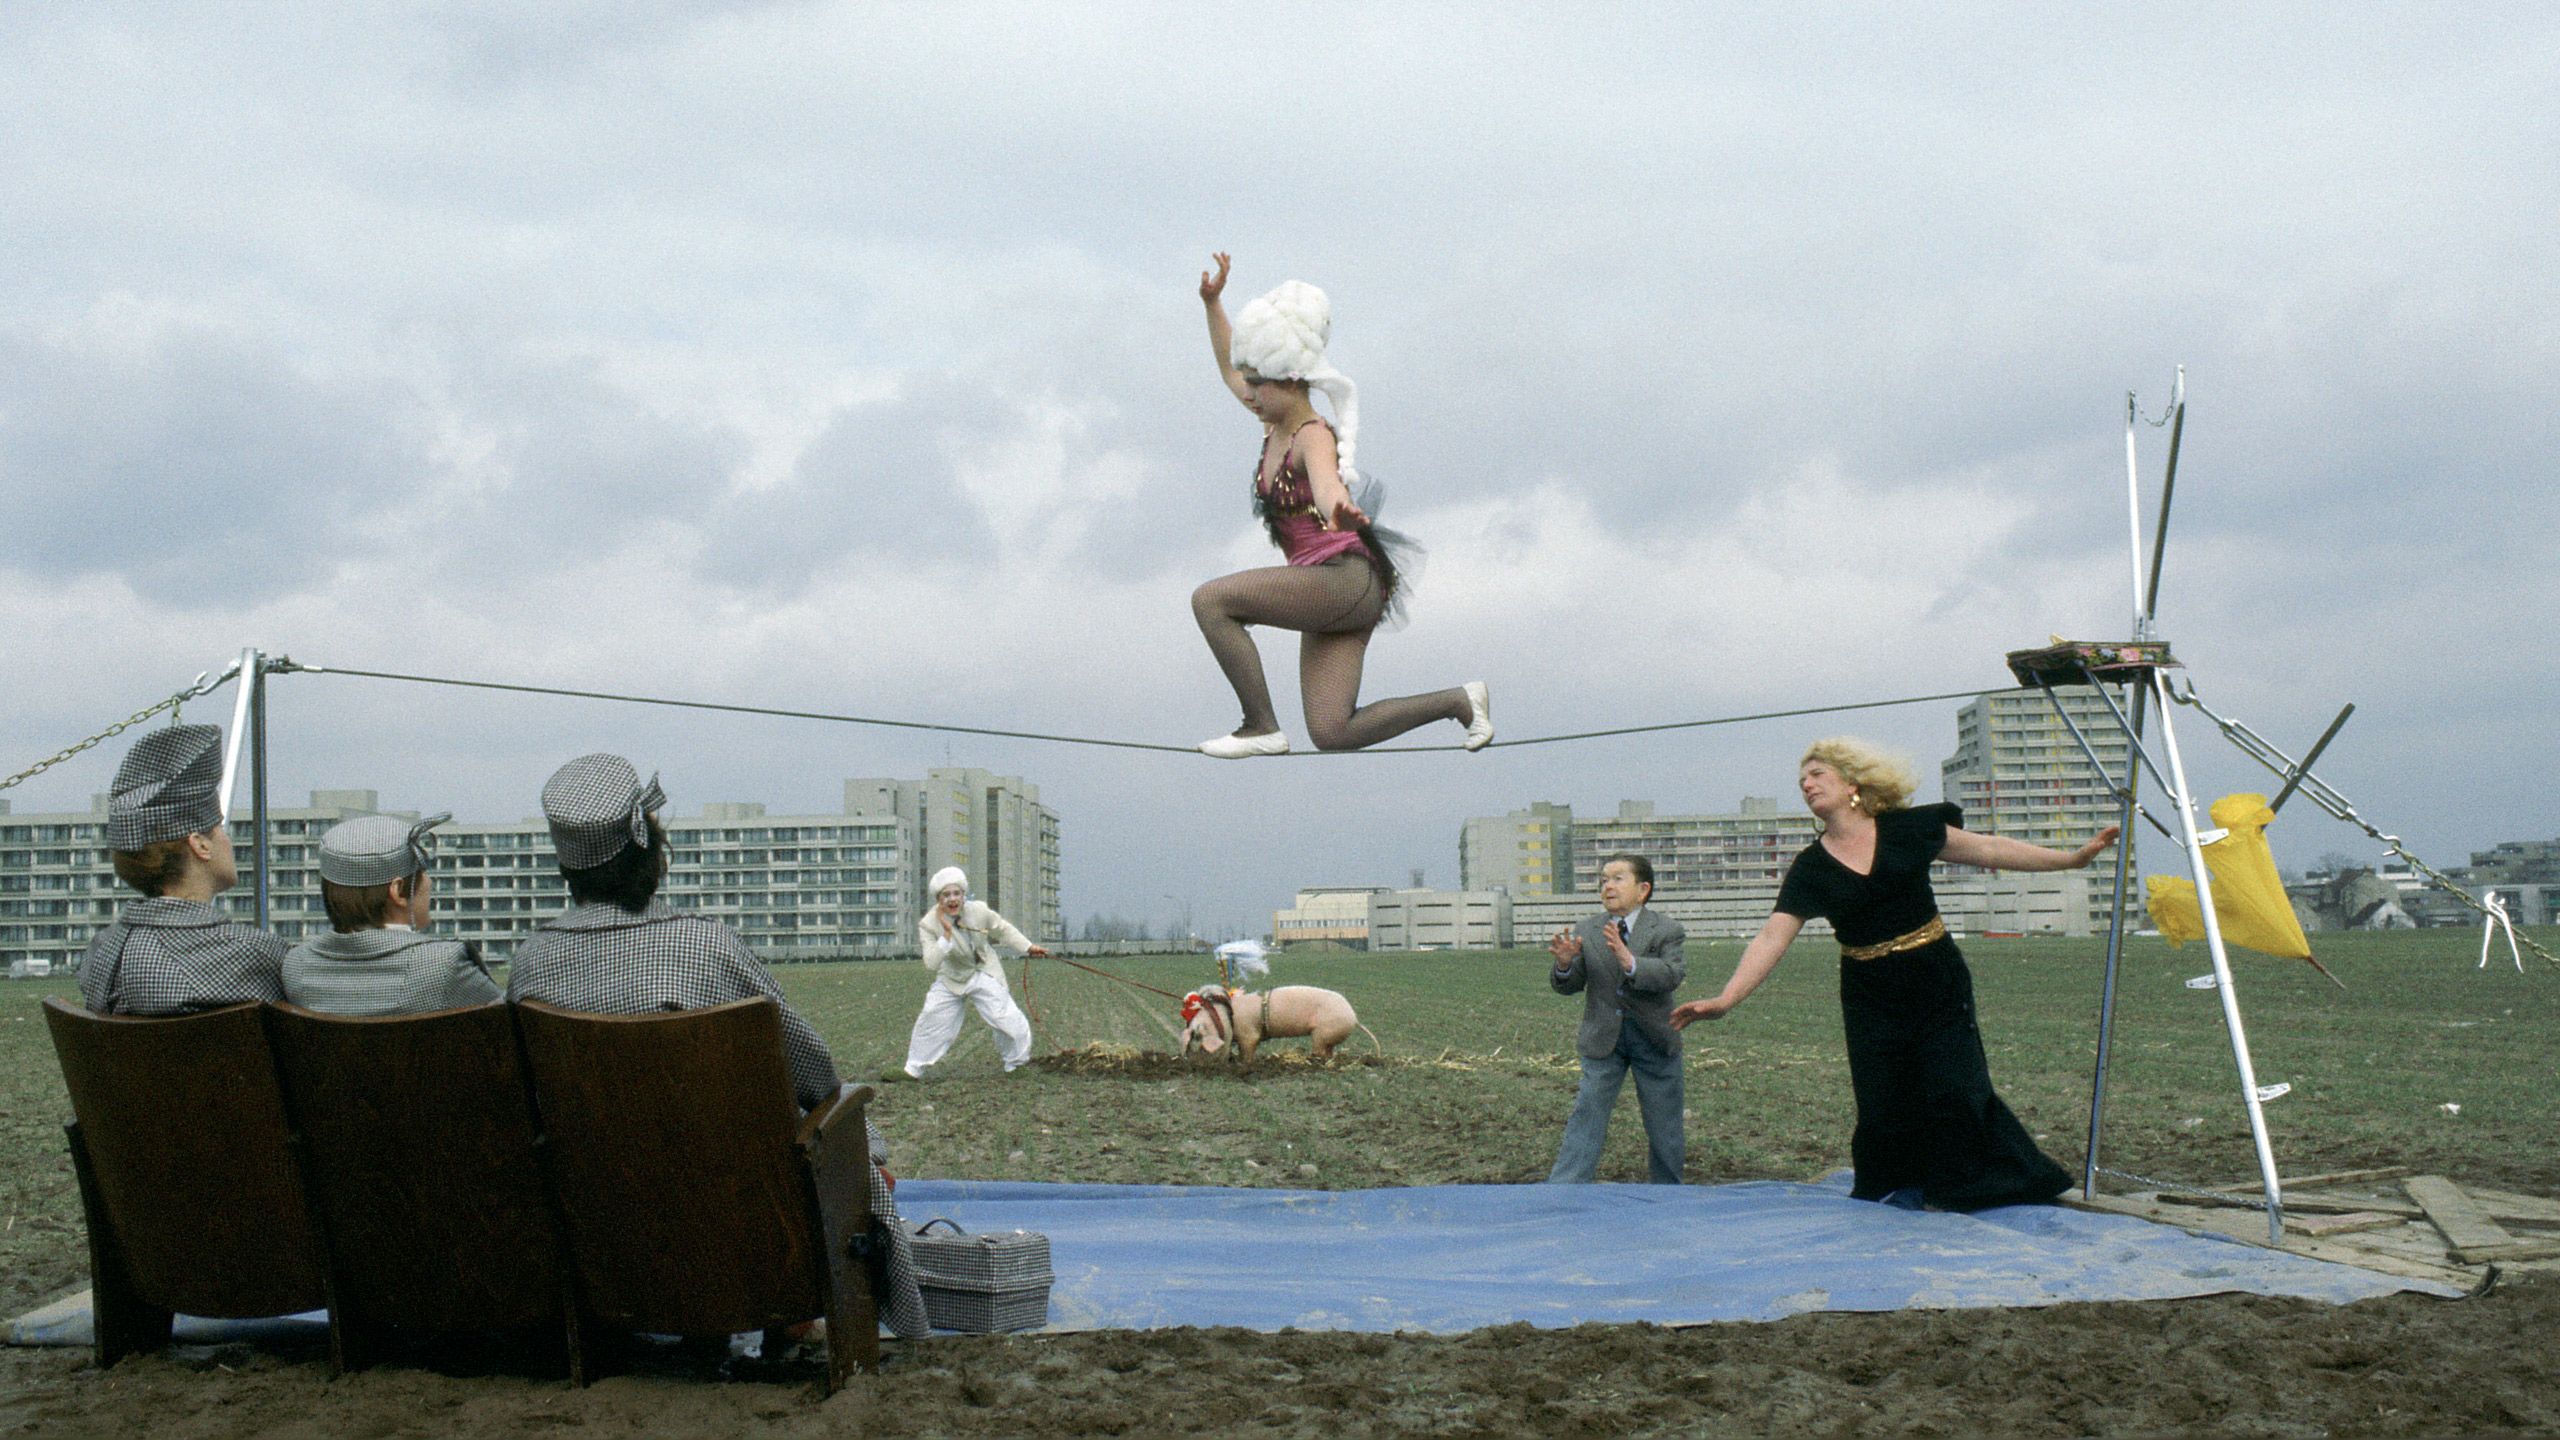 Szenenfoto: In einer Berliner Brachlandschaft ist eine Seilkonstruktion aufgebaut, auf der eine kostümierte Seiltänzerin kniet. Im Vordergrund drei Zuschauende in grauer Kleidung auf Sesseln, im Hintergrund große Wohnanlagen